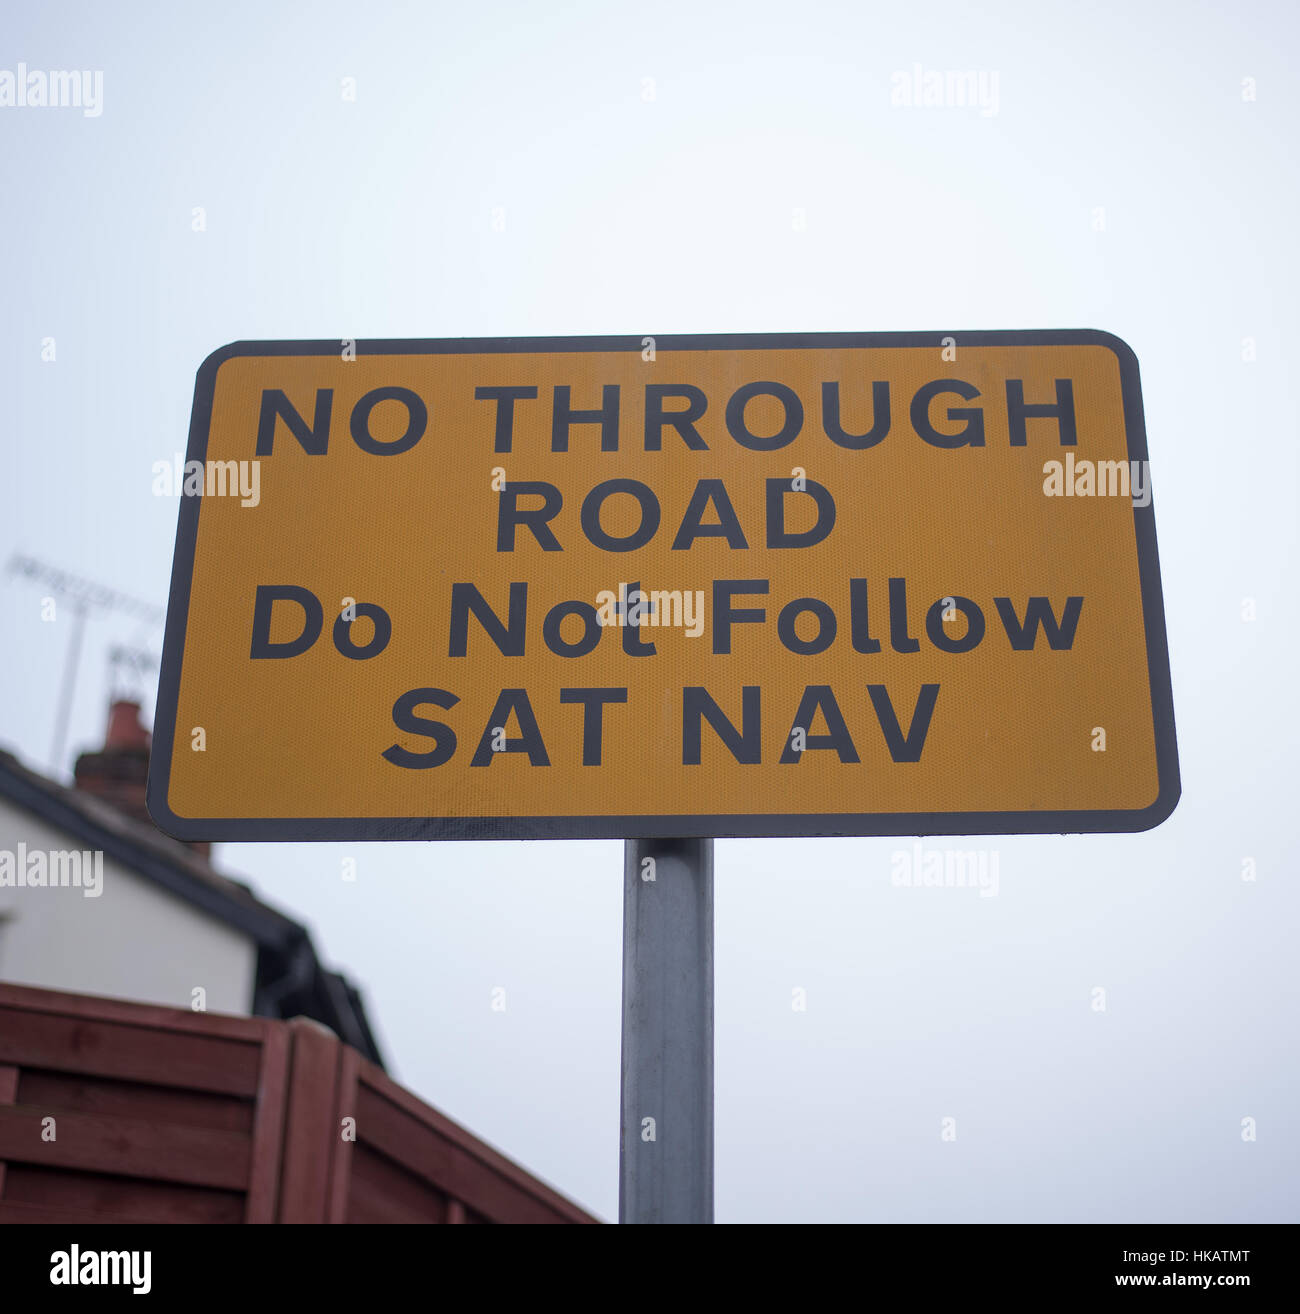 No through road, do not follow sat nav sign, UK Urban road sign Stock Photo